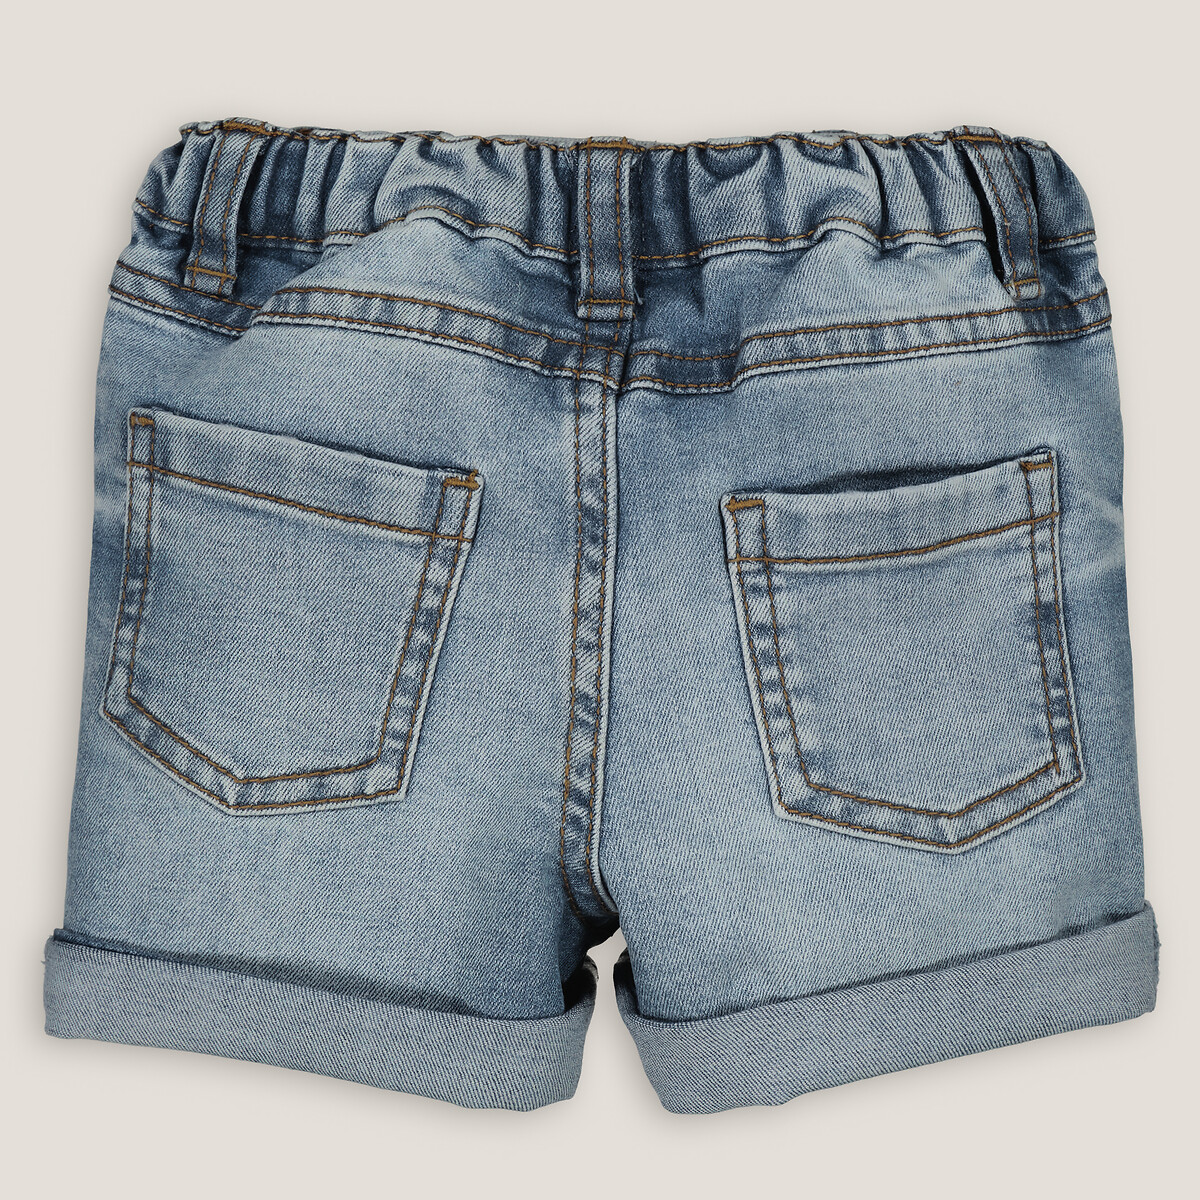 Шорты из джинсовой ткани  1 год - 74 см синий LaRedoute, размер 1 год - 74 см - фото 4